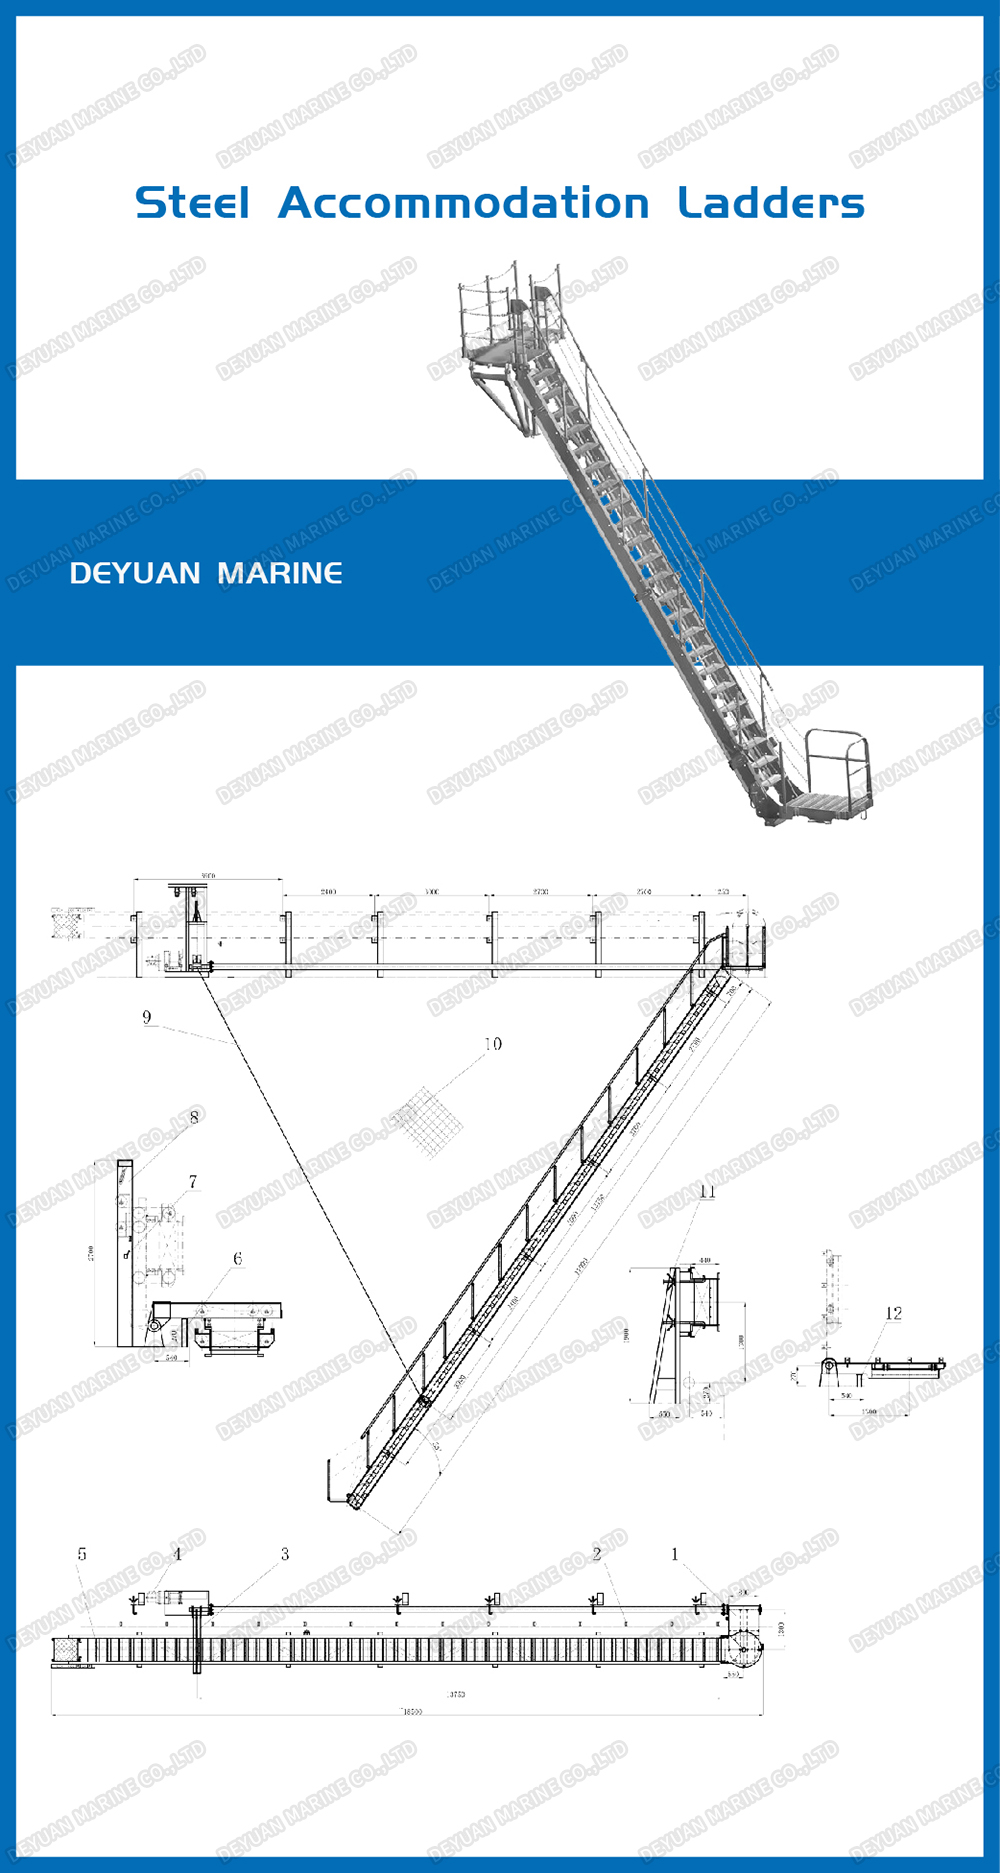 Steel Acc. ladder-DEYUAN MARINE